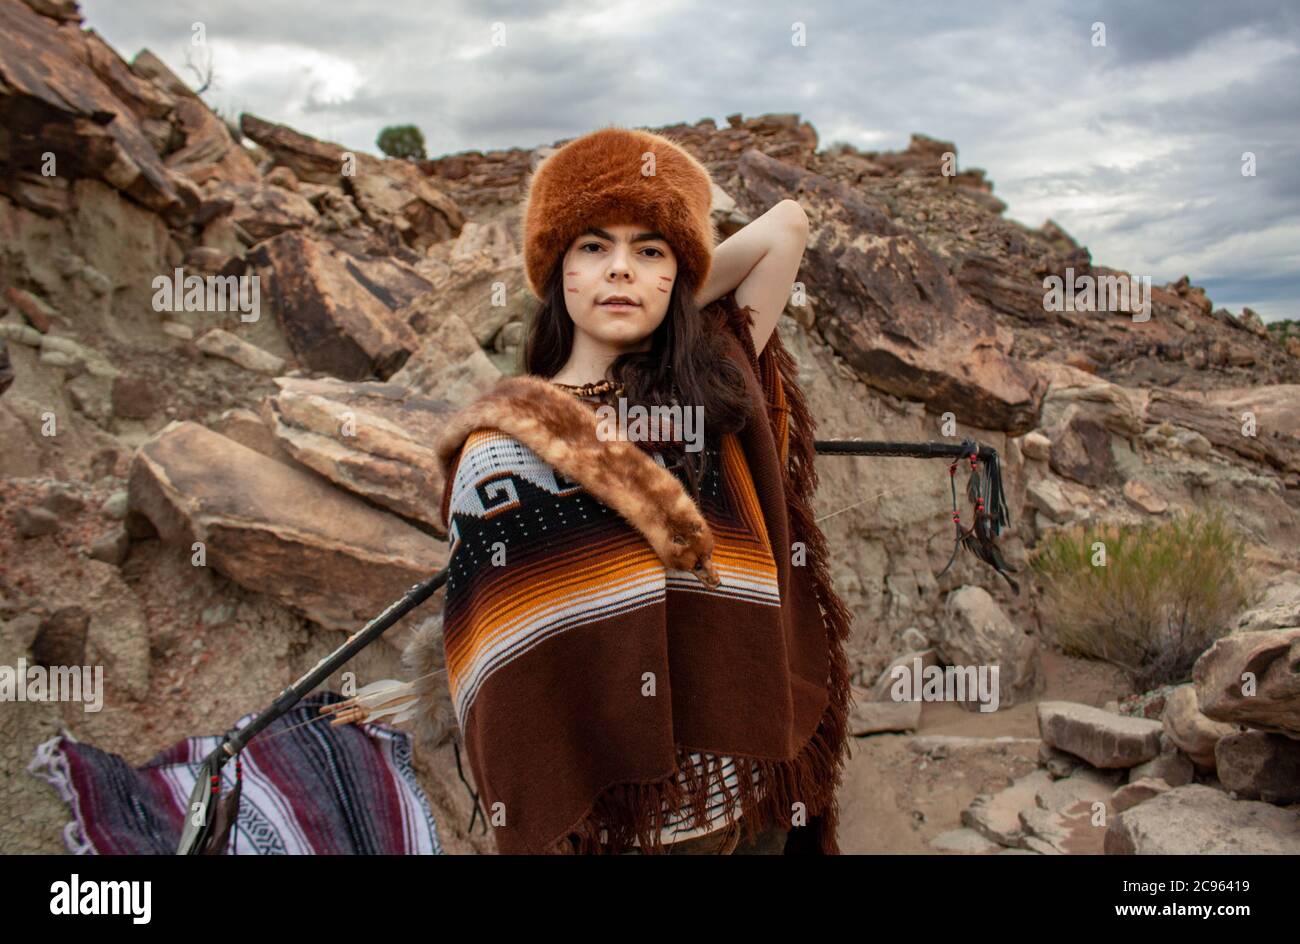 Junge hispanische Frau mit Pfeil und Bogen und als Trapper in Poncho und Pelzhut in der ojito Wilderness Area in New Mexico, USA Stockfoto